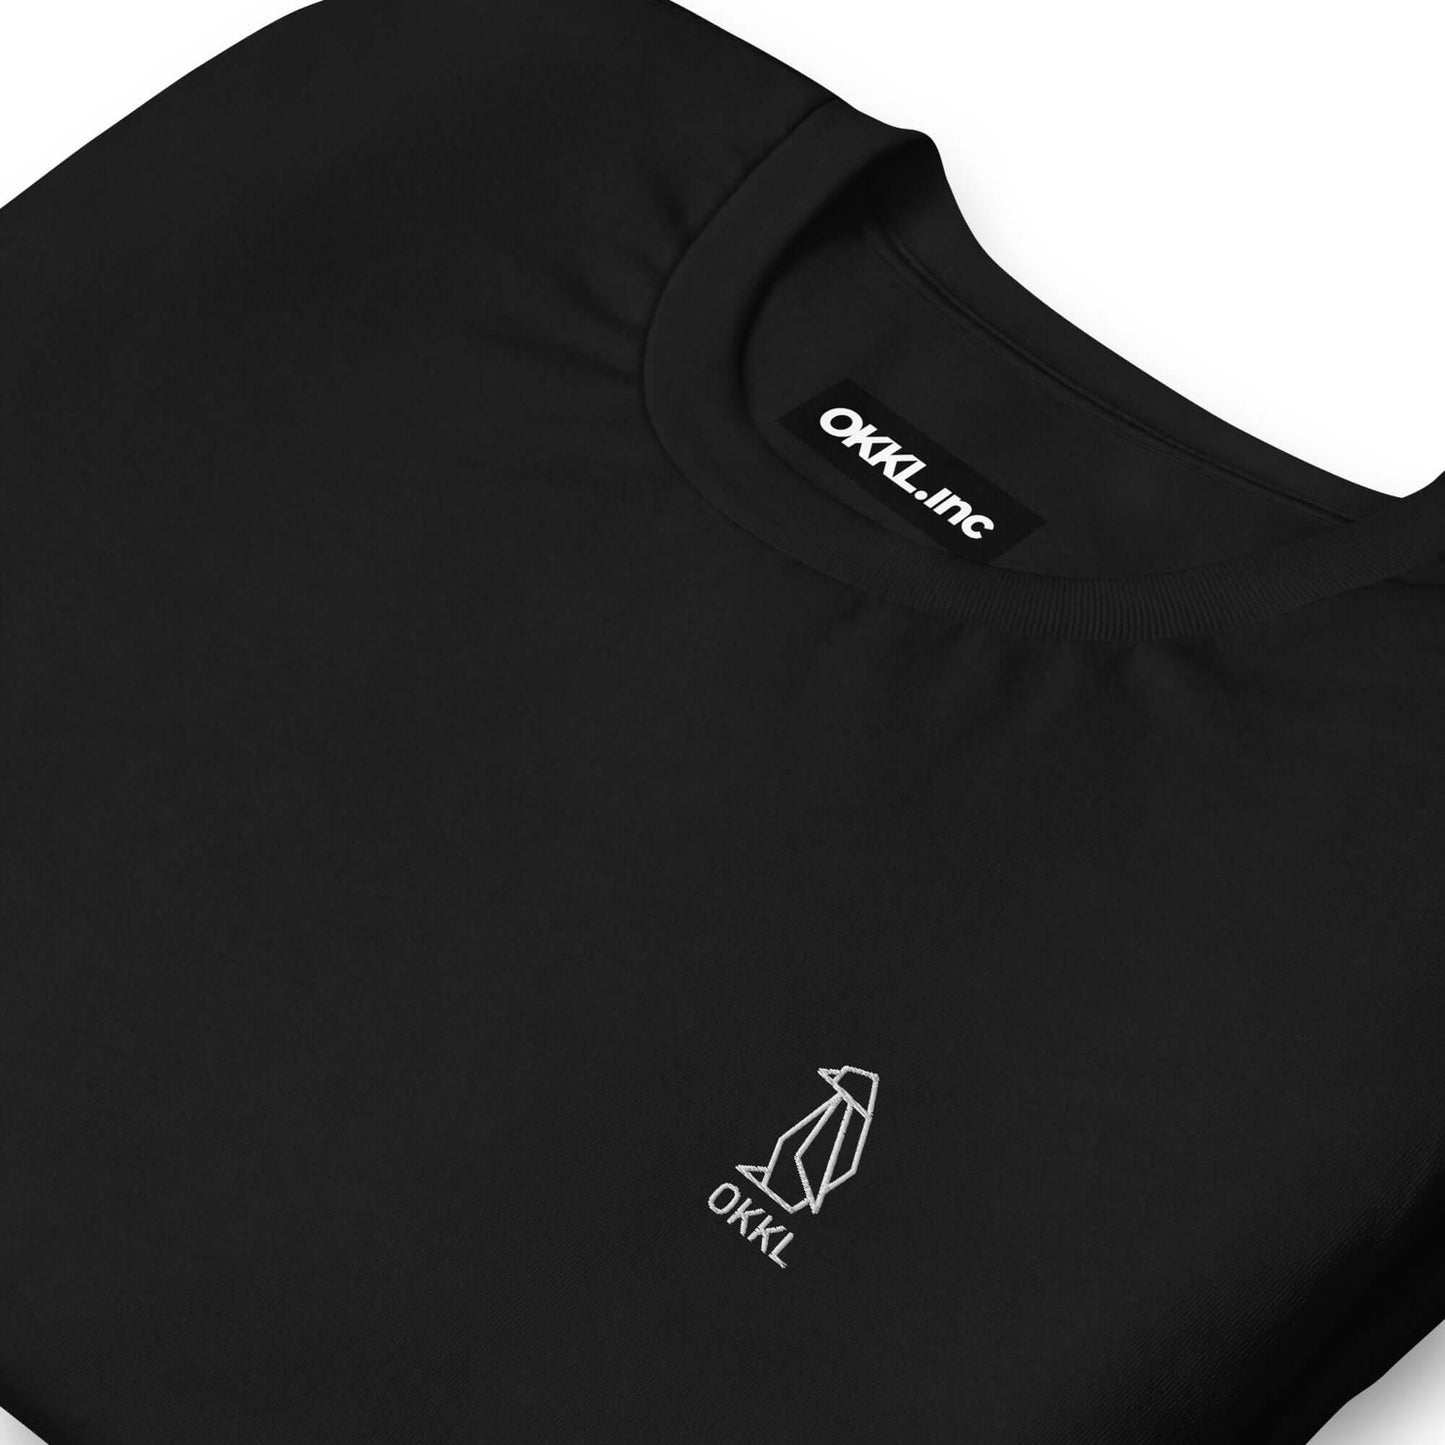 OKKL Penguin: Black Unisex t-shirt